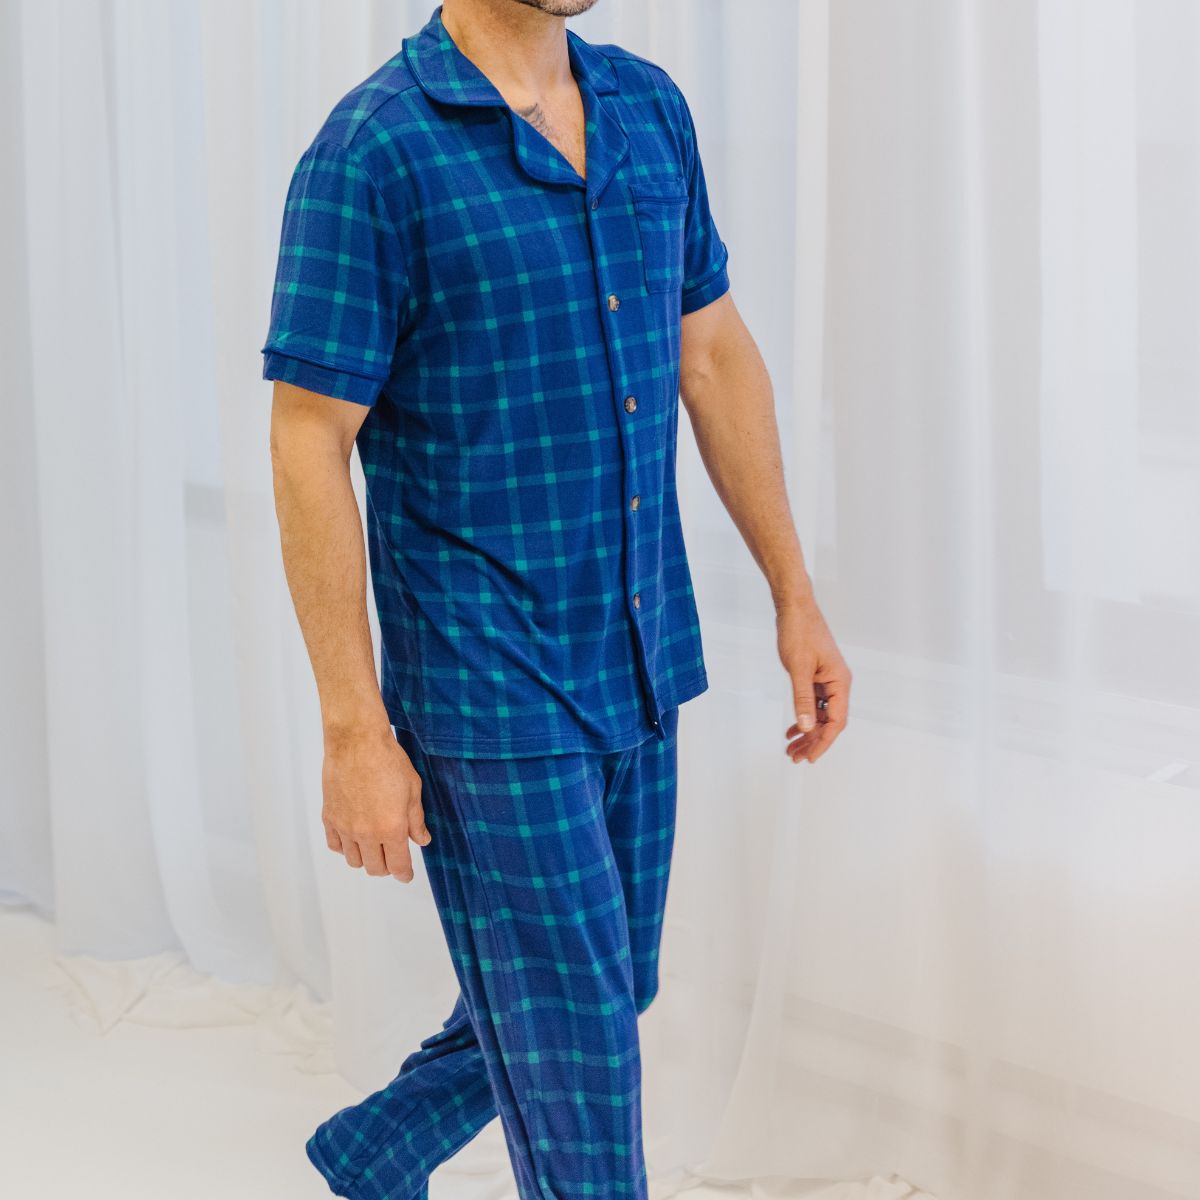 Snor bamboe pyjamaset voor heren